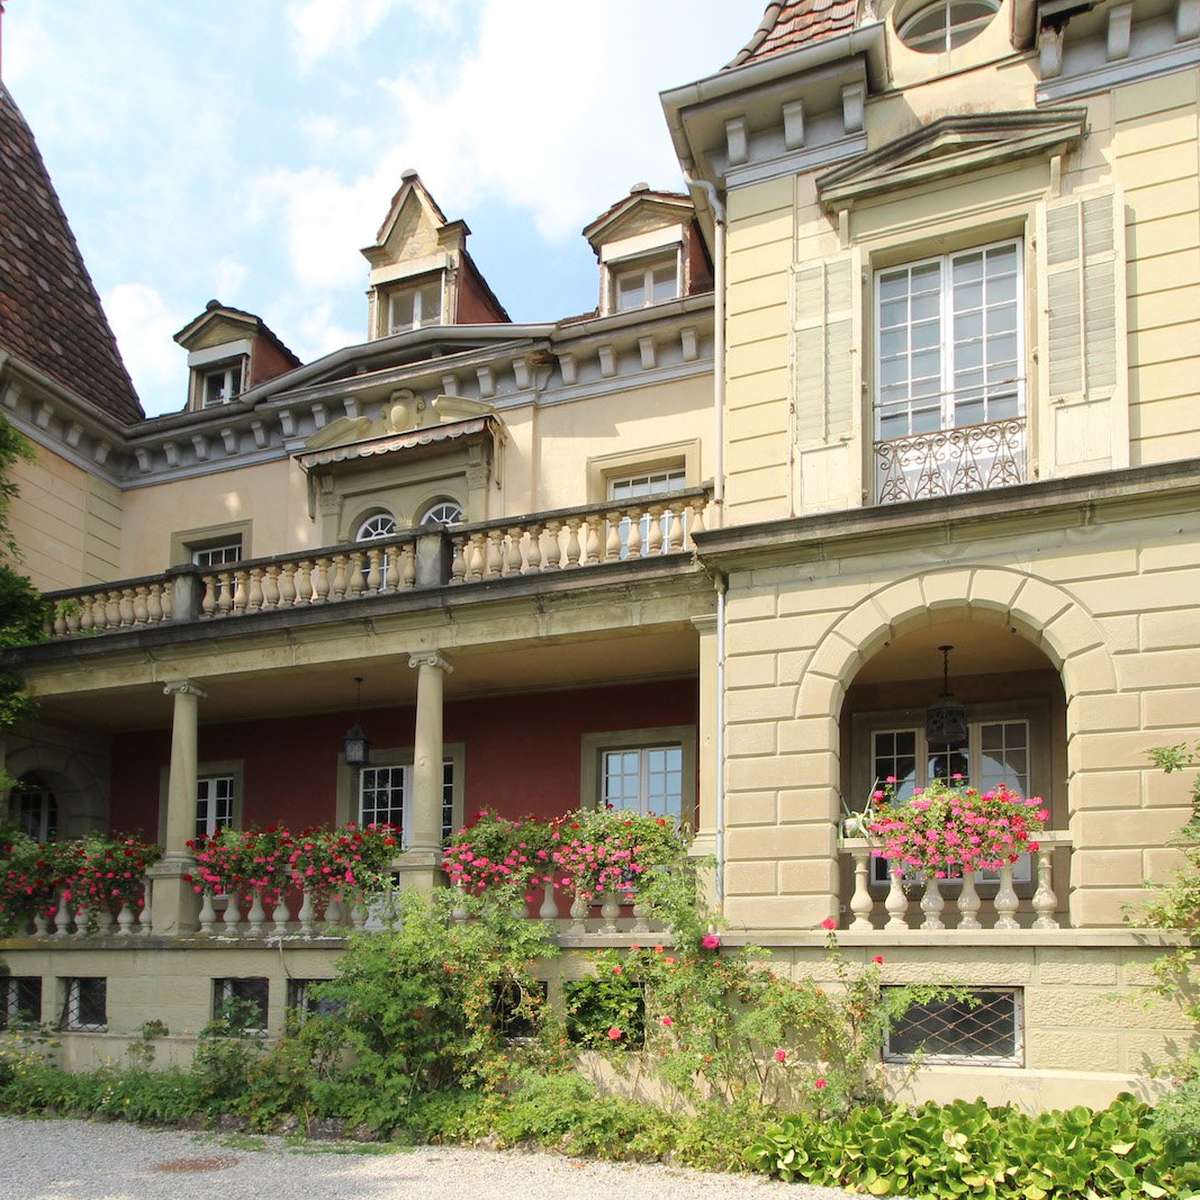 Musegg-Villa Luzern: Baukommission stimmt für Umbau